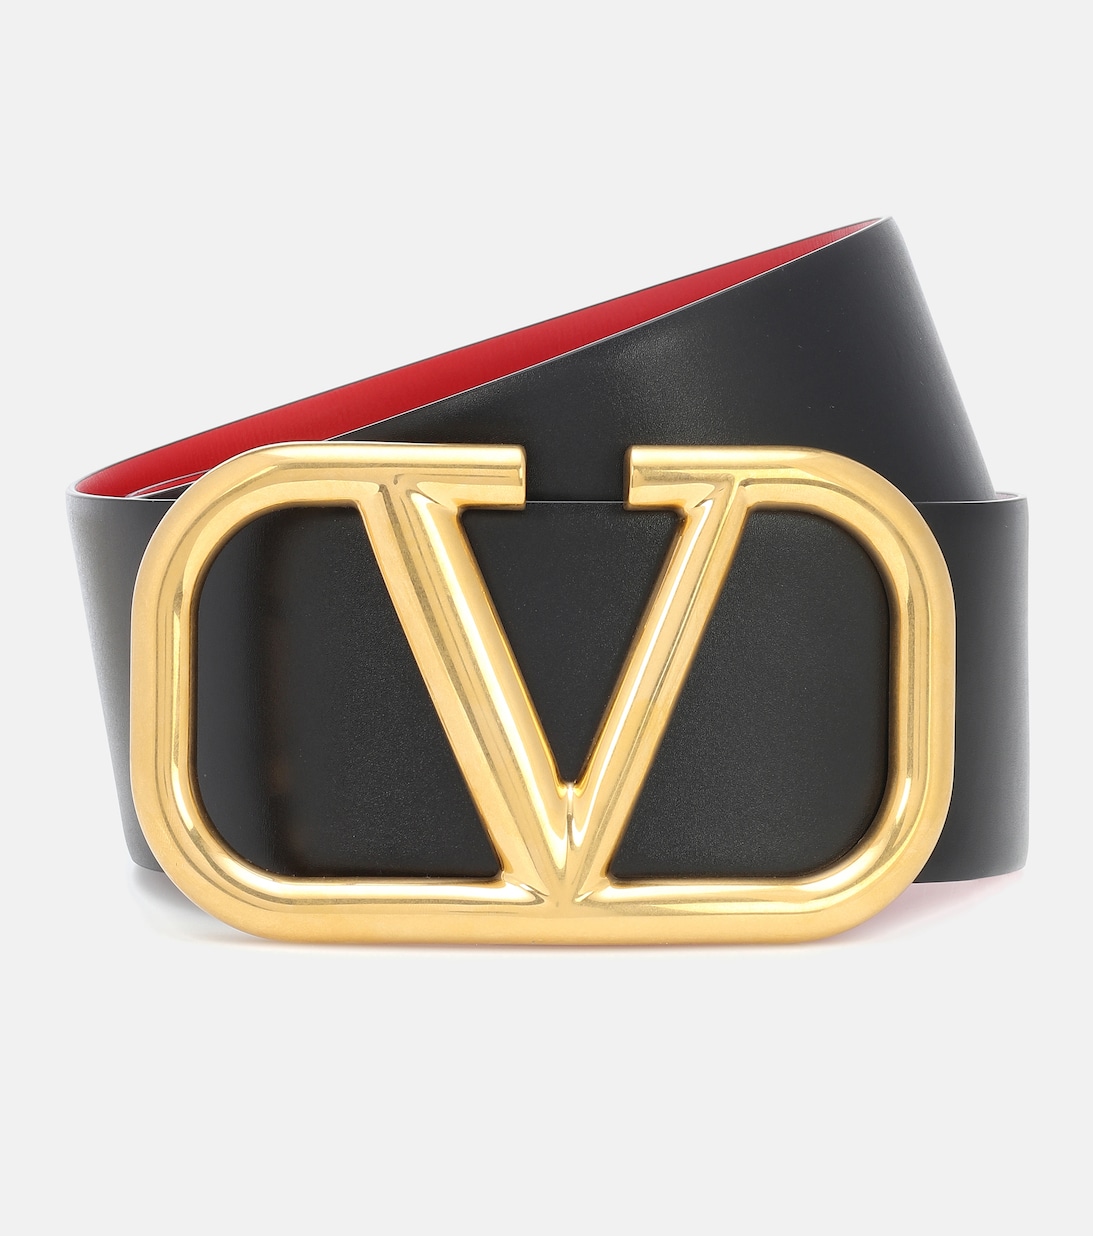 Двусторонний кожаный ремень с логотипом V Valentino Garavani, разноцветный